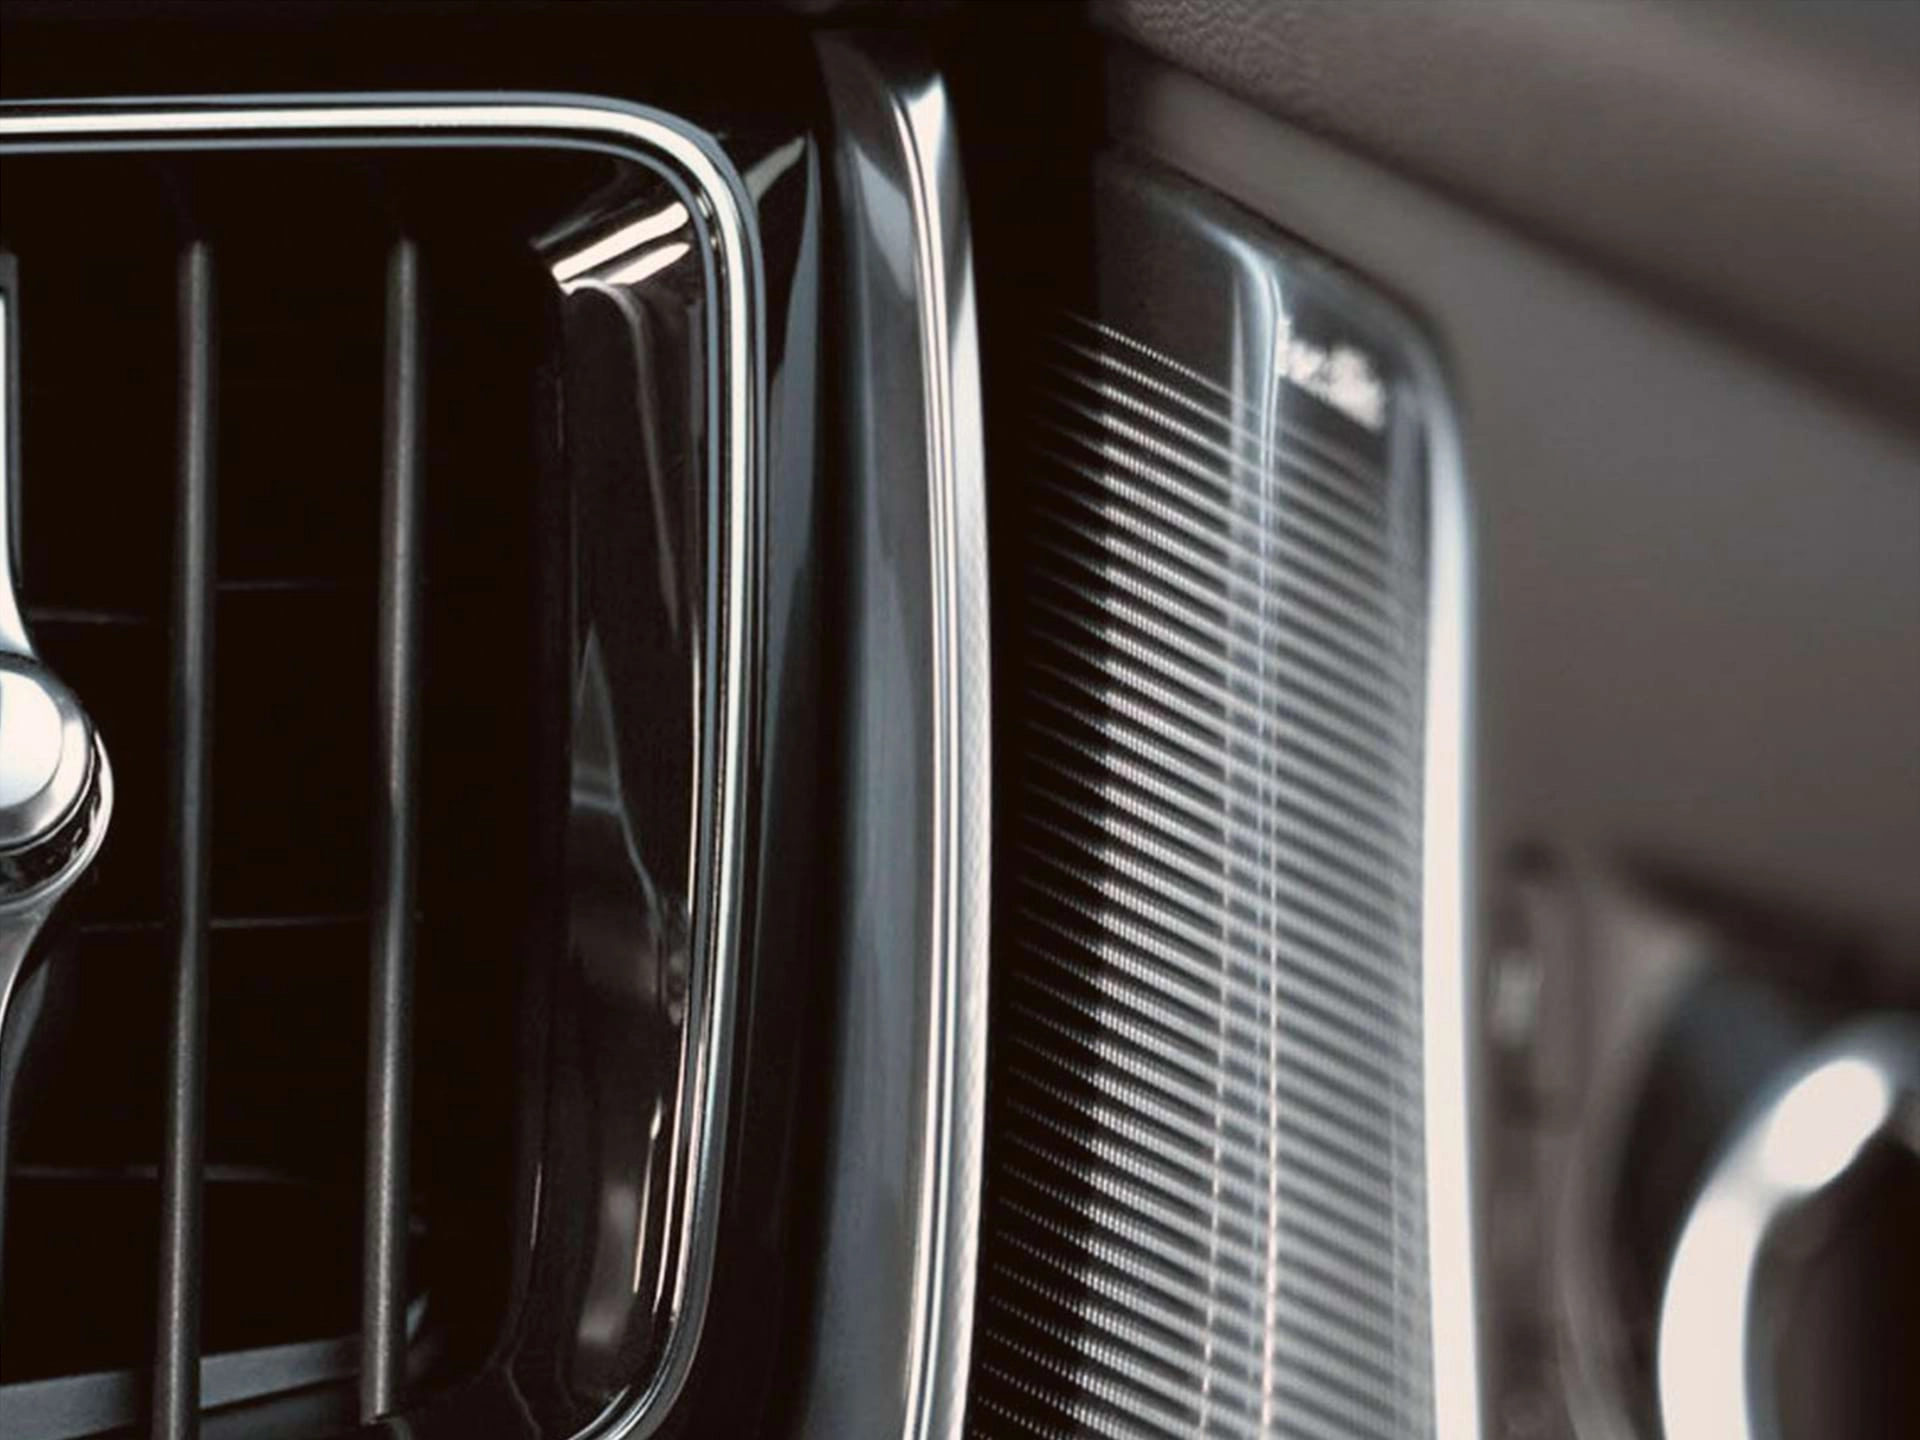 Krupni plan otvora za ventilaciju u Volvo limuzini.